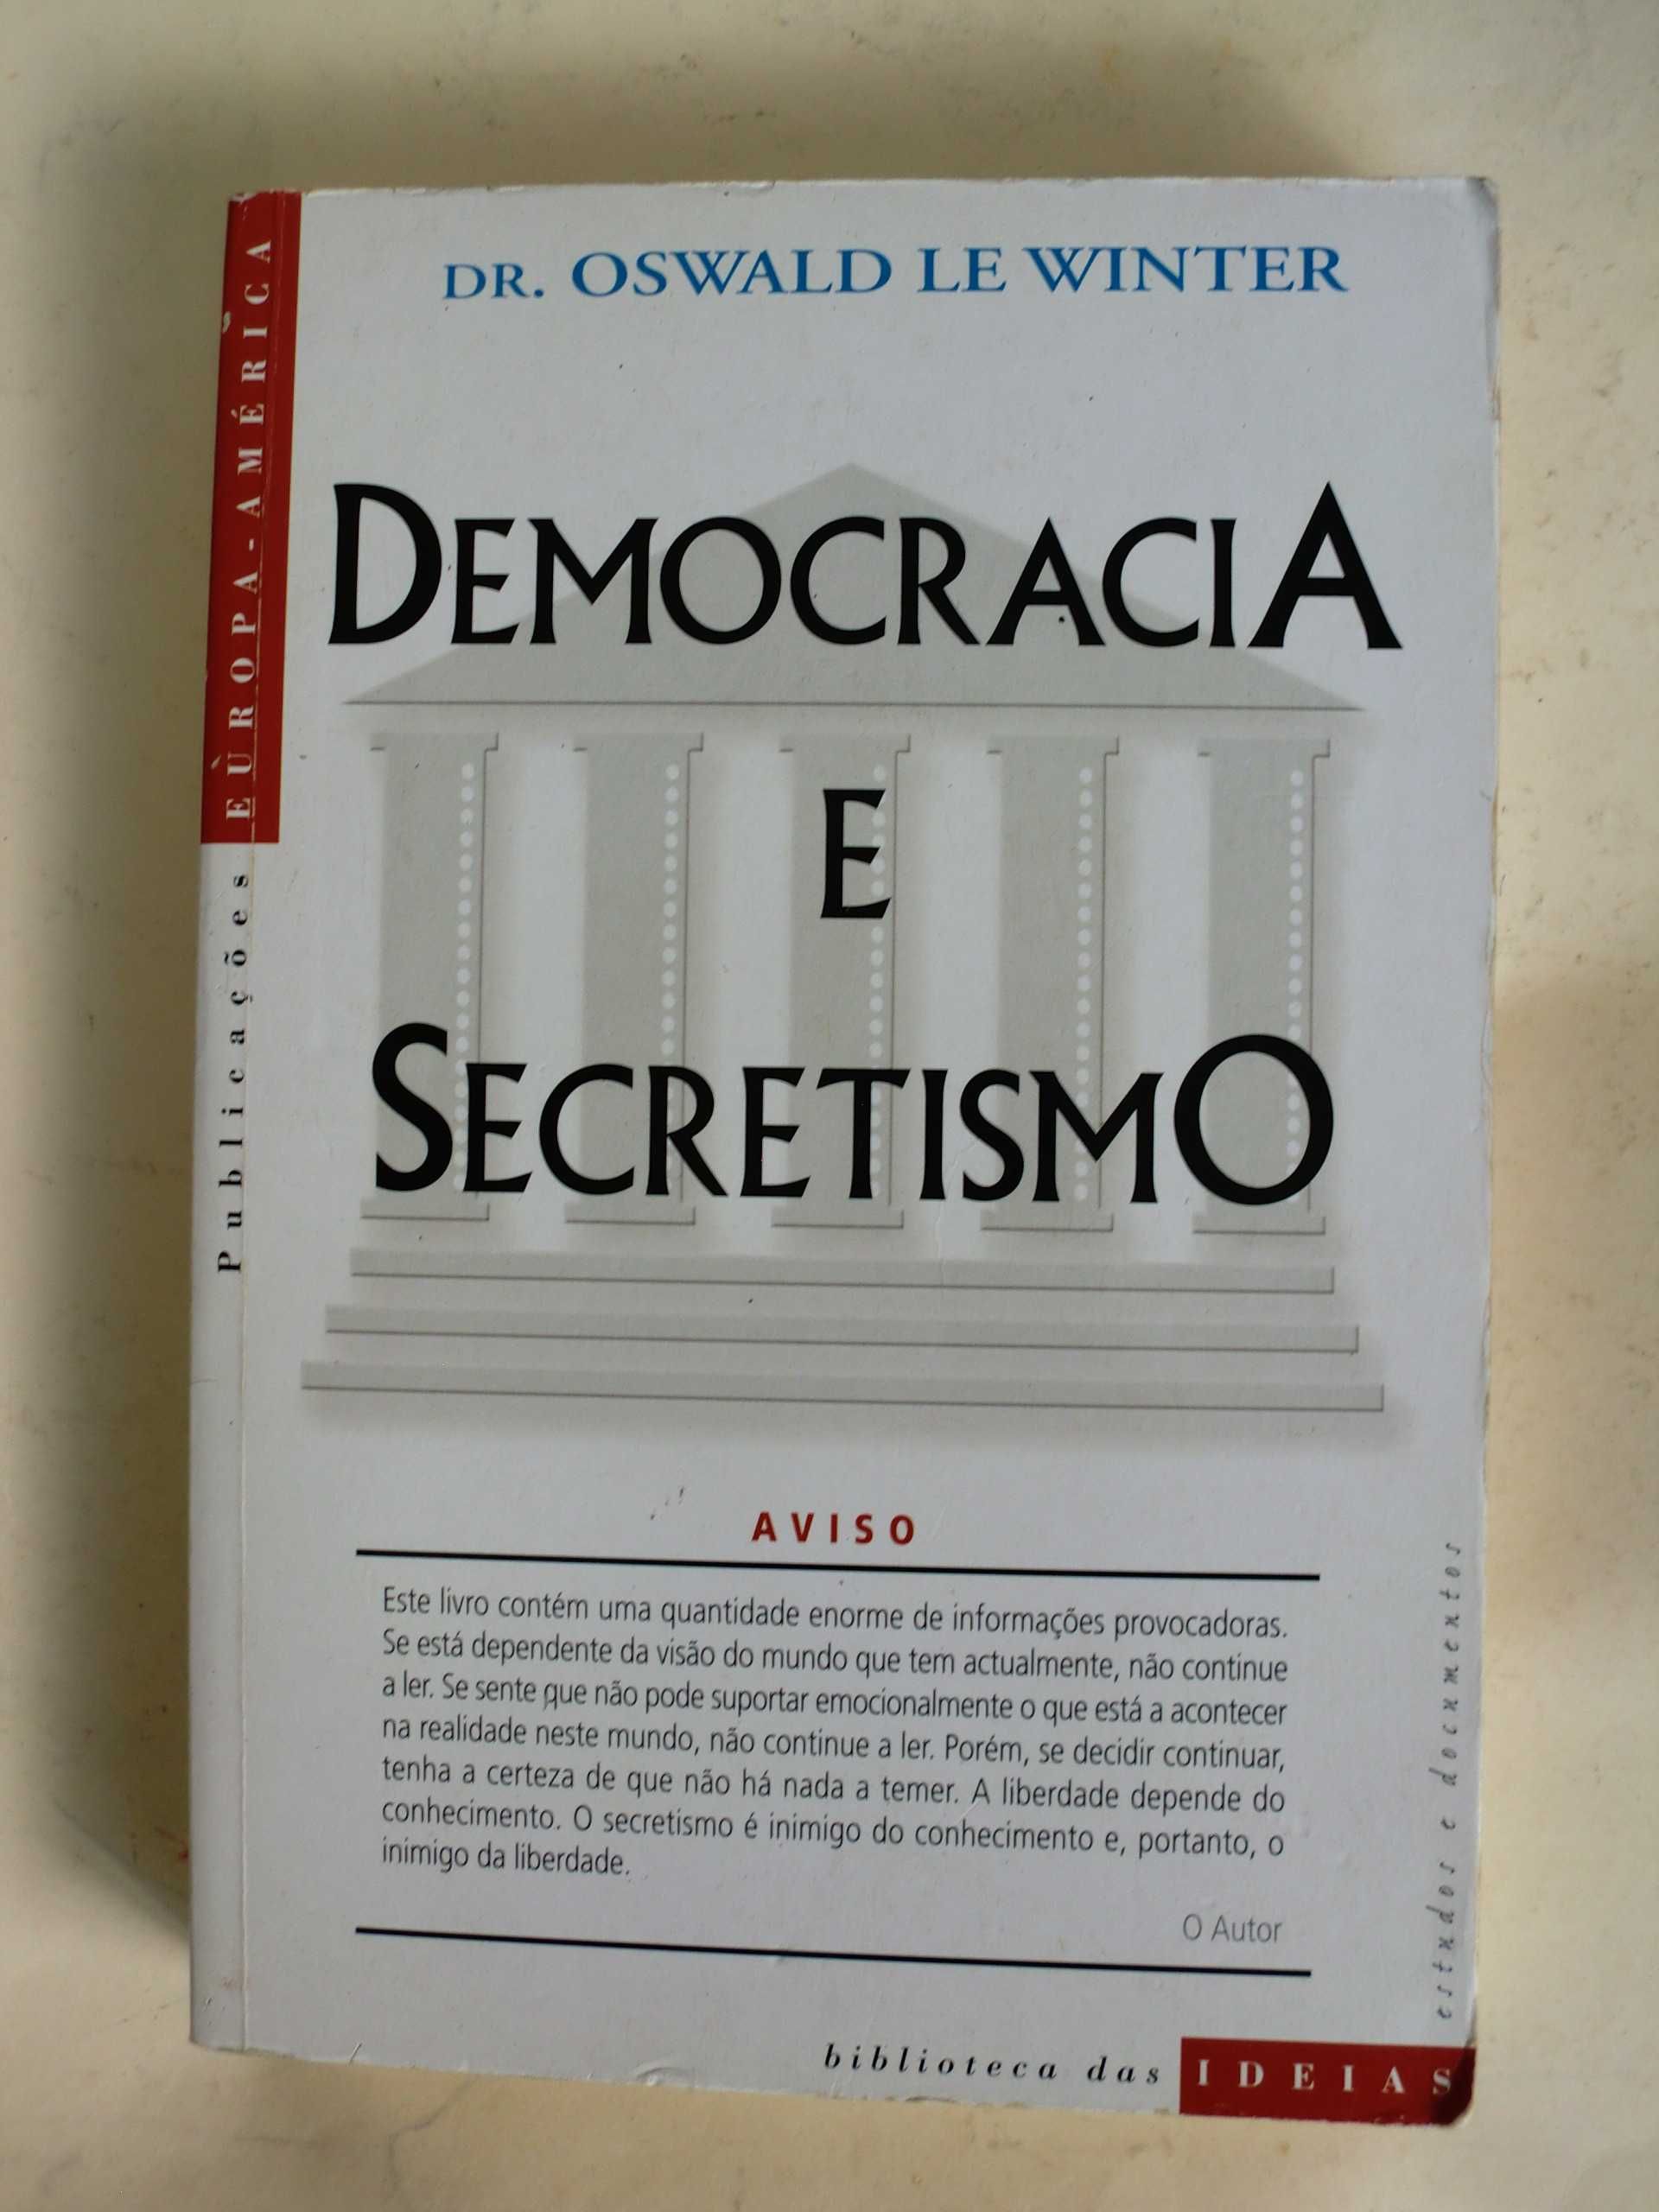 Democracia e Secretismo
de Dr. Oswald Le Winter